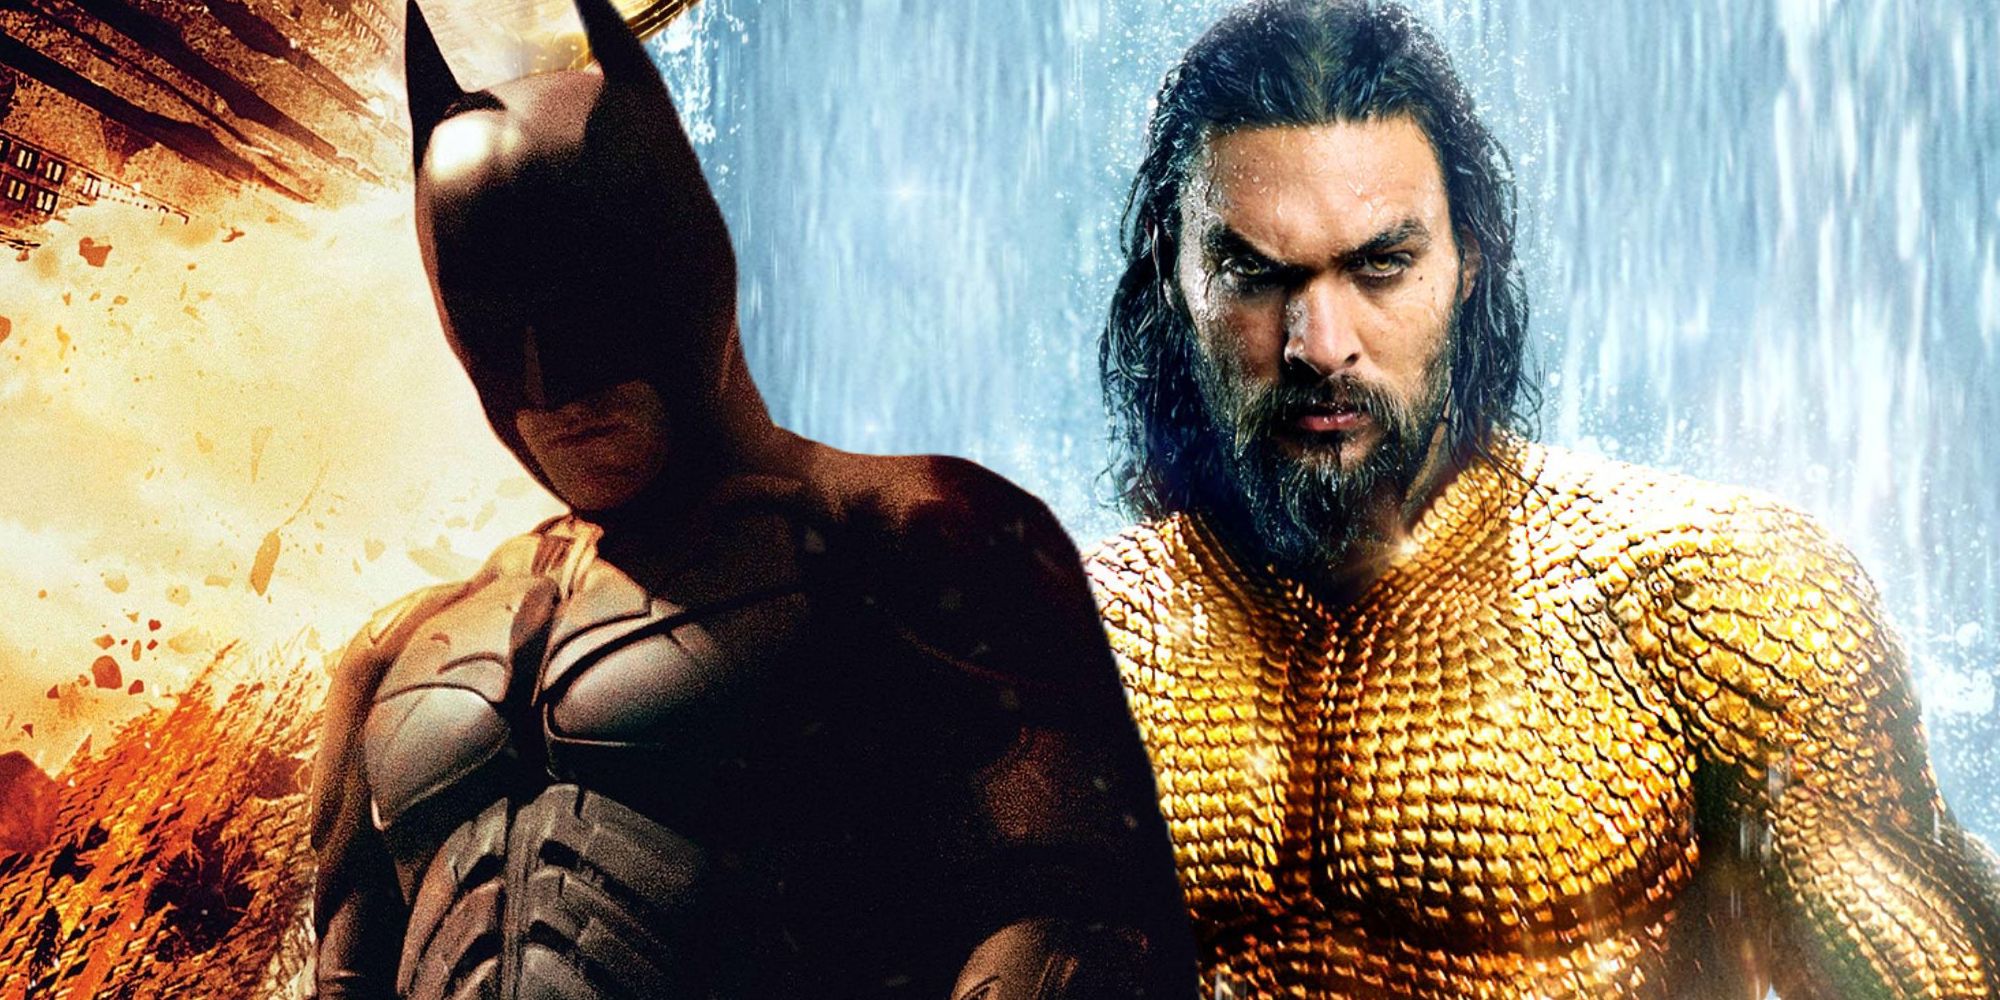 Christian Bale as Batman and Jason Momoa as Aquaman